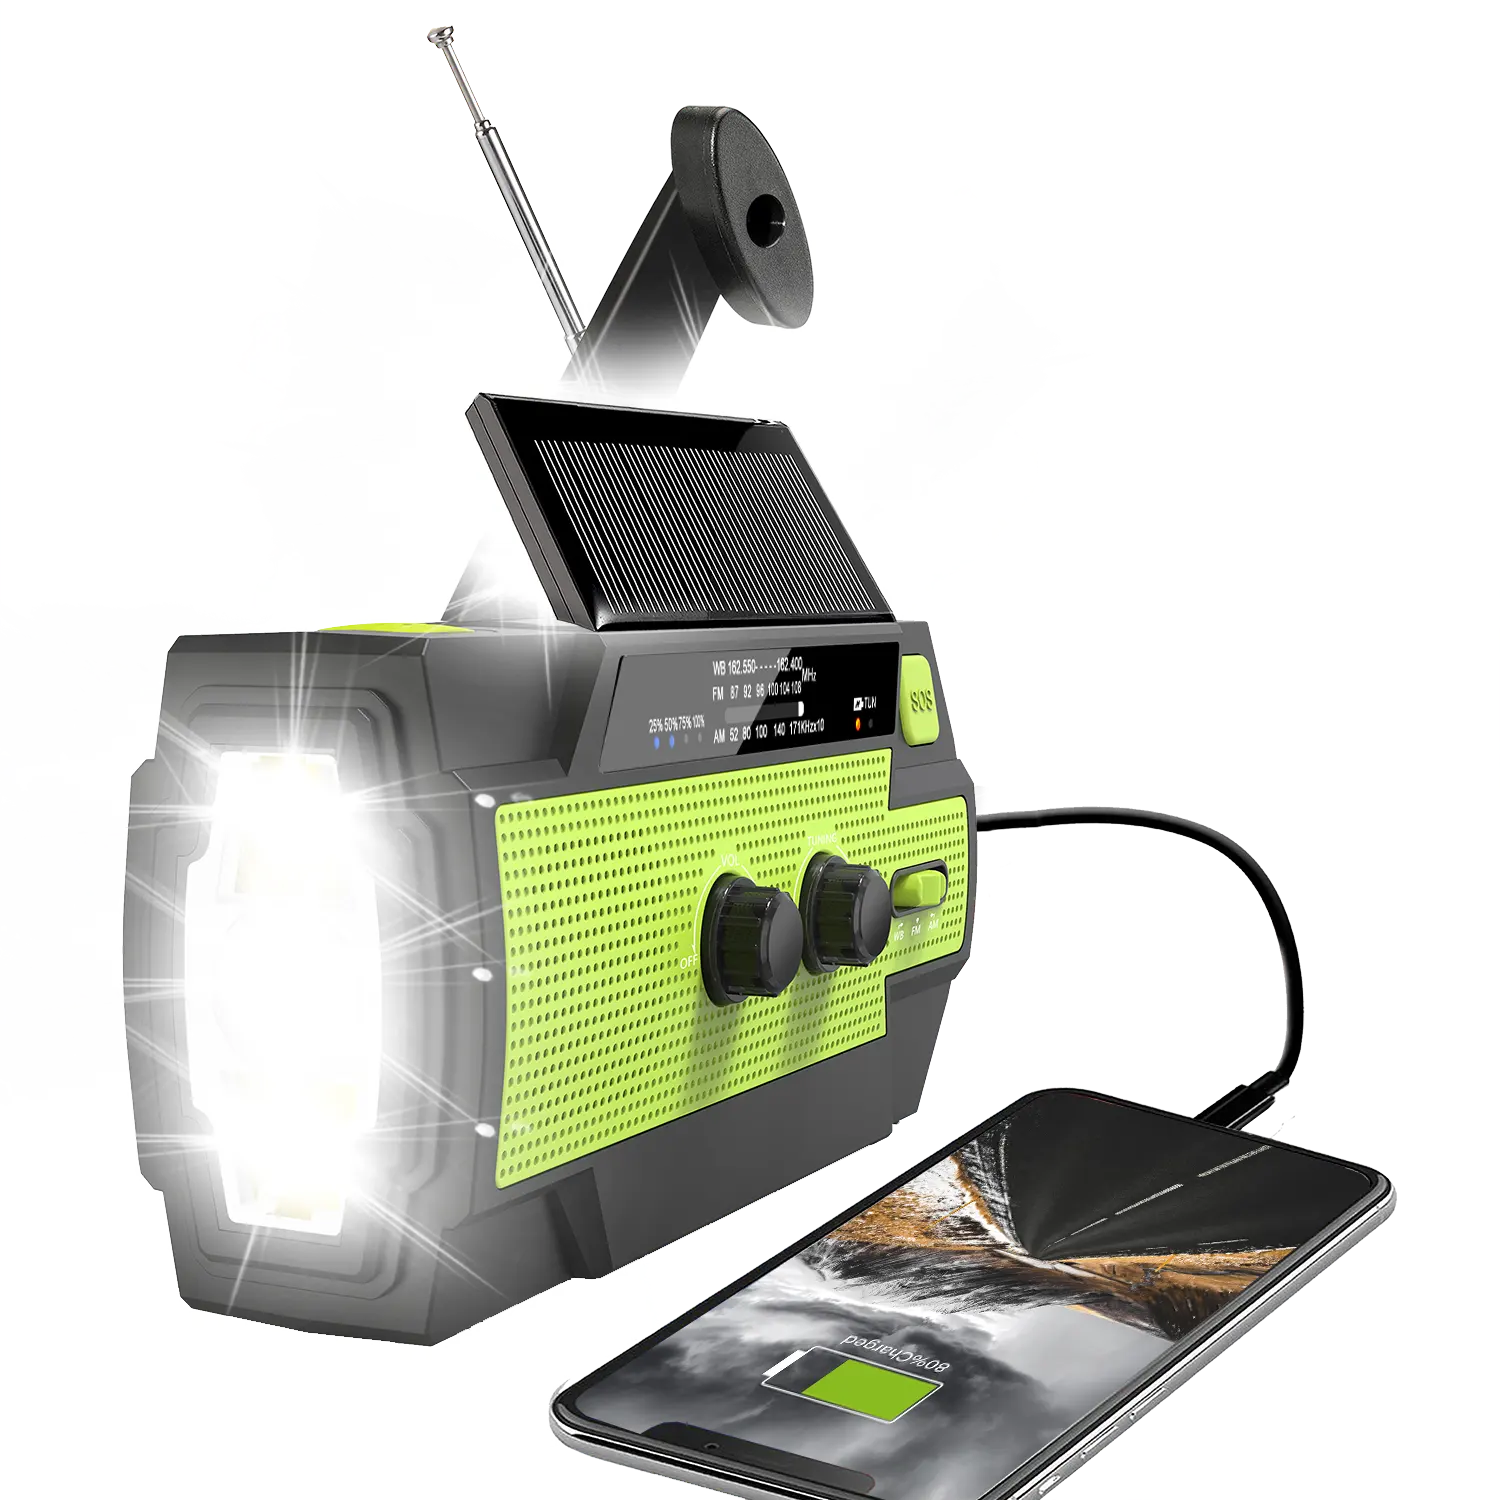 MEDING Factory Fospower Kit de secours, manivelle solaire Portable, Radio météo